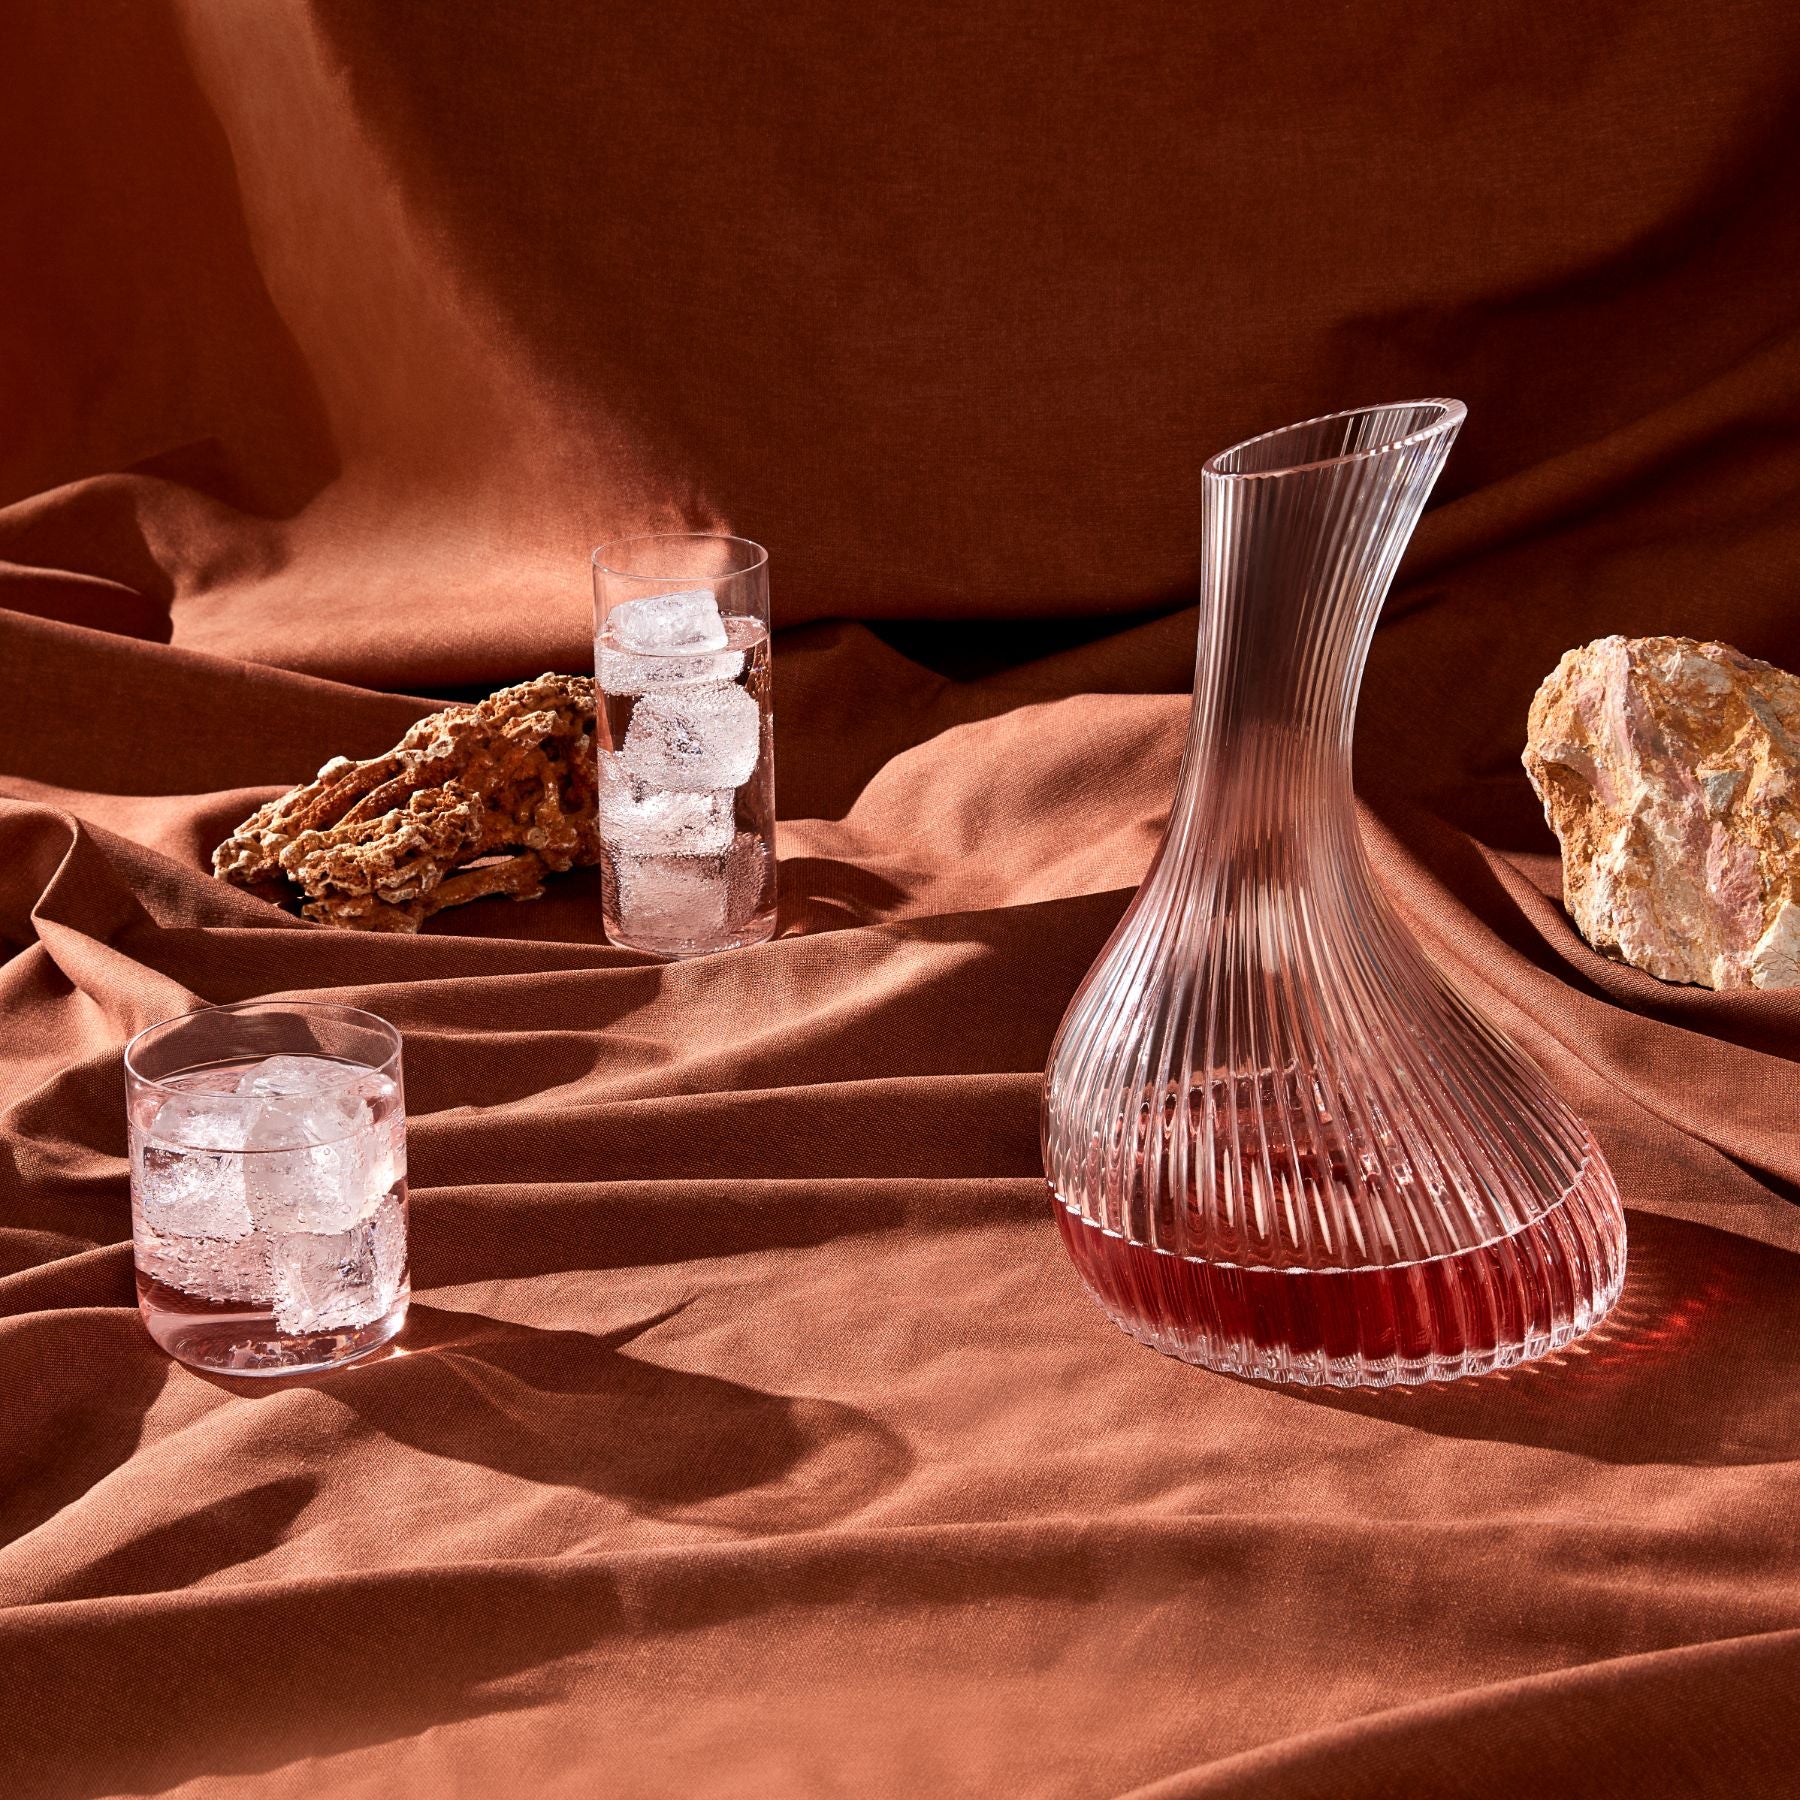 Carafe d'eau transparente avec bouchon de liège Rhythm - Nude Glass